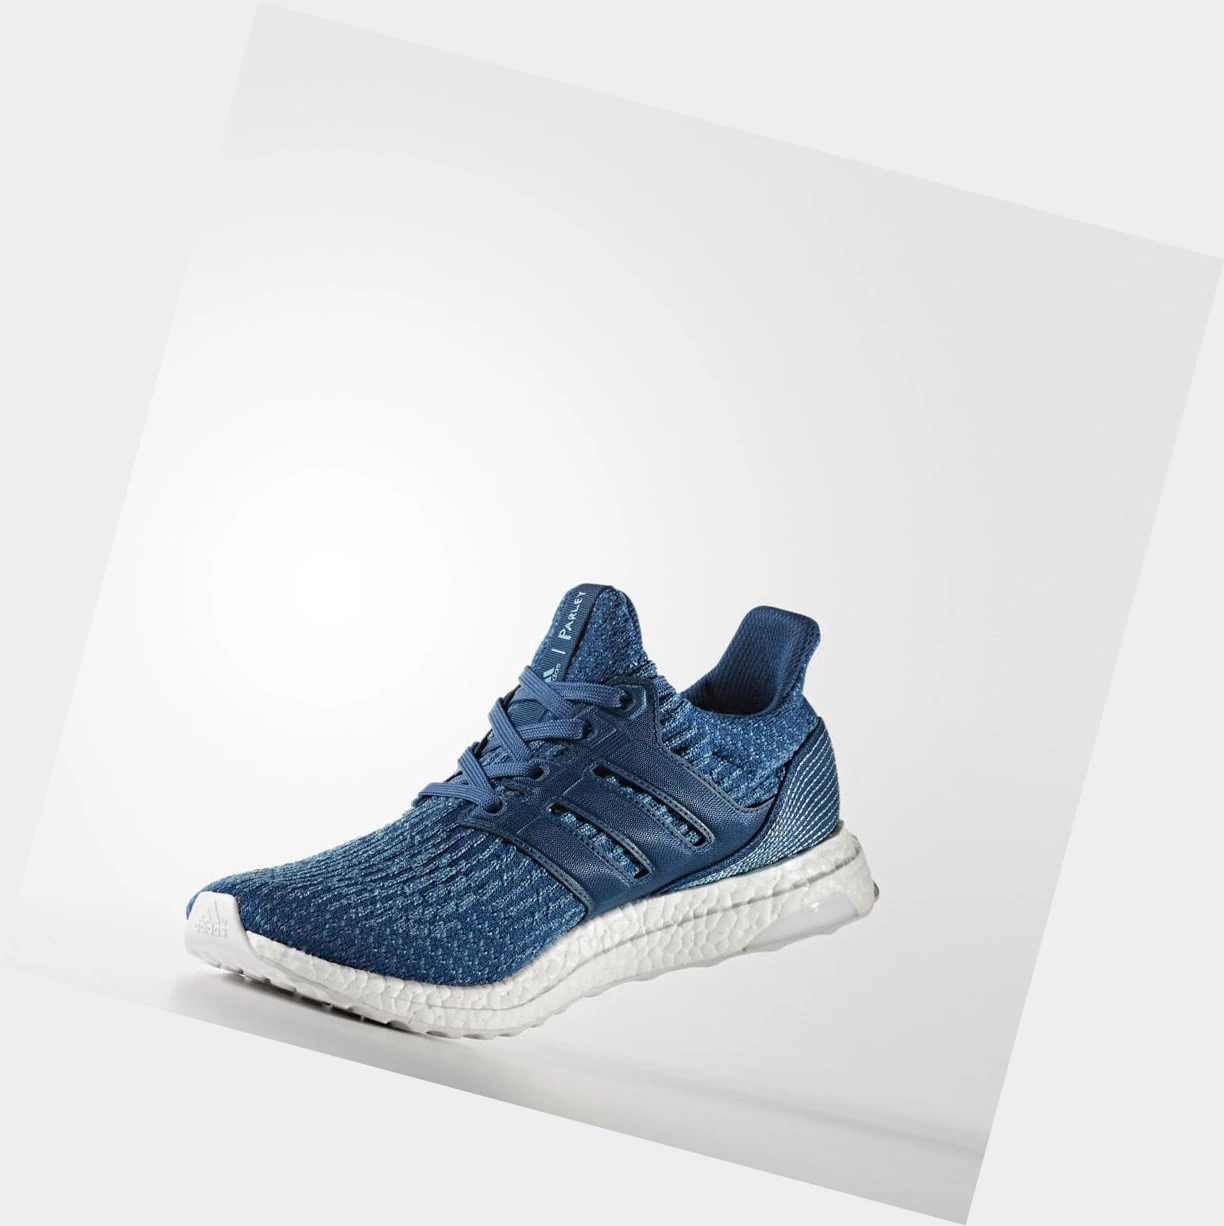 Bezecke Topanky Adidas Ultraboost Parley Panske Modre | 125SKNHLQBF